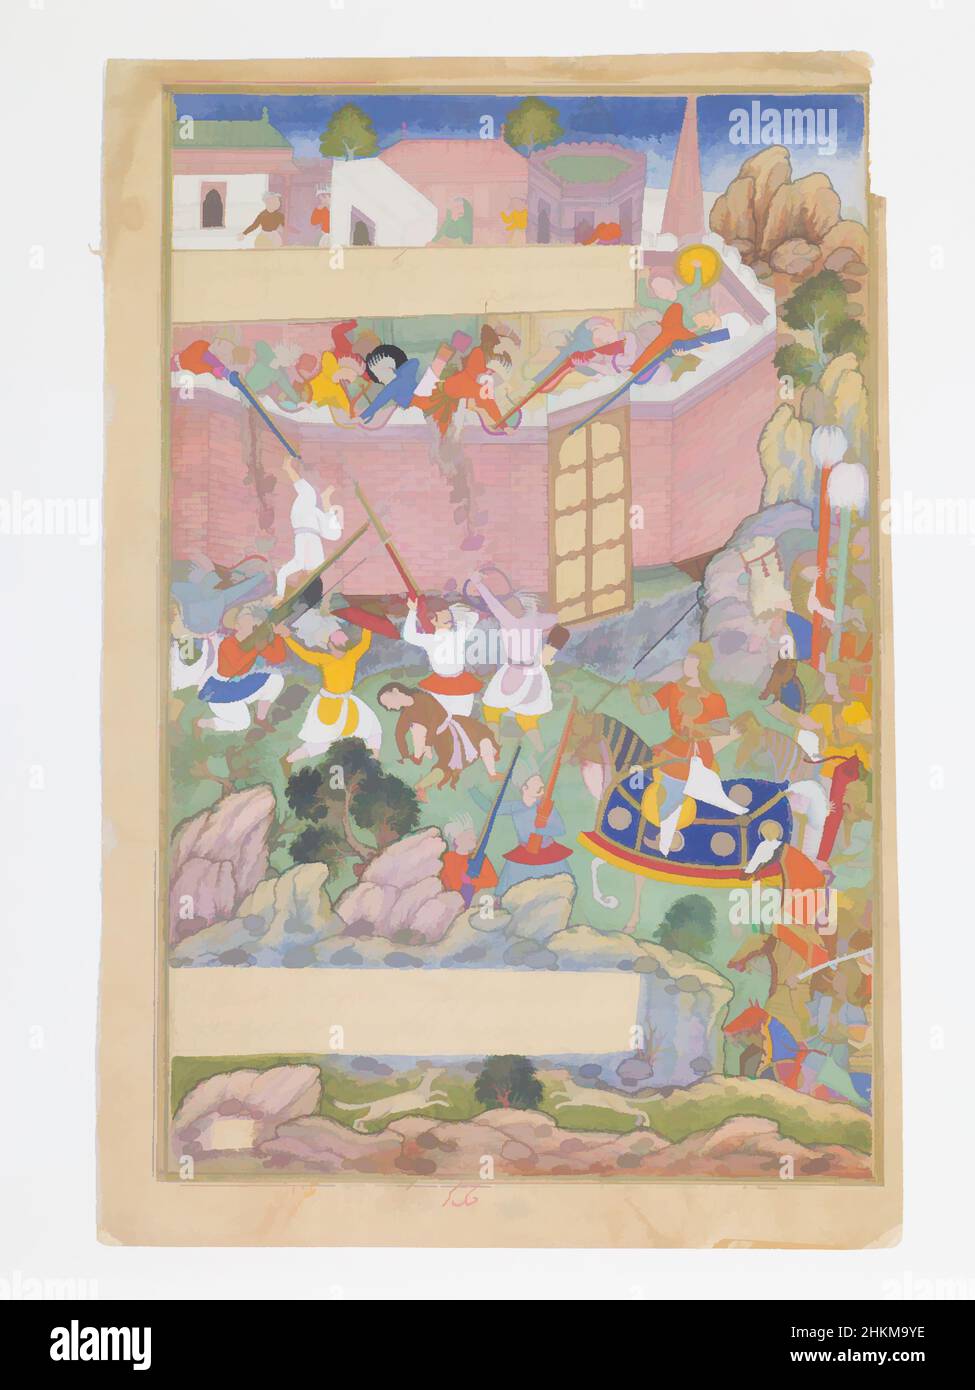 Art inspiré par Siege de Bagdad, folio d'un manuscrit illuminé de l'Histoire de Gengis Khan, Khem Karan, Indien, actif c.1580-c.1605, Indien, Période Mughal, 1526-1858, règne d'Akbar, Mughal, régna 1556-1605, 1596, encre, aquarelle opaque, or sur papier, fait à Lahore, oeuvres classiques modernisées par Artotop avec une touche de modernité. Formes, couleur et valeur, impact visuel accrocheur sur l'art émotions par la liberté d'œuvres d'art d'une manière contemporaine. Un message intemporel qui cherche une nouvelle direction créative. Artistes qui se tournent vers le support numérique et créent le NFT Artotop Banque D'Images